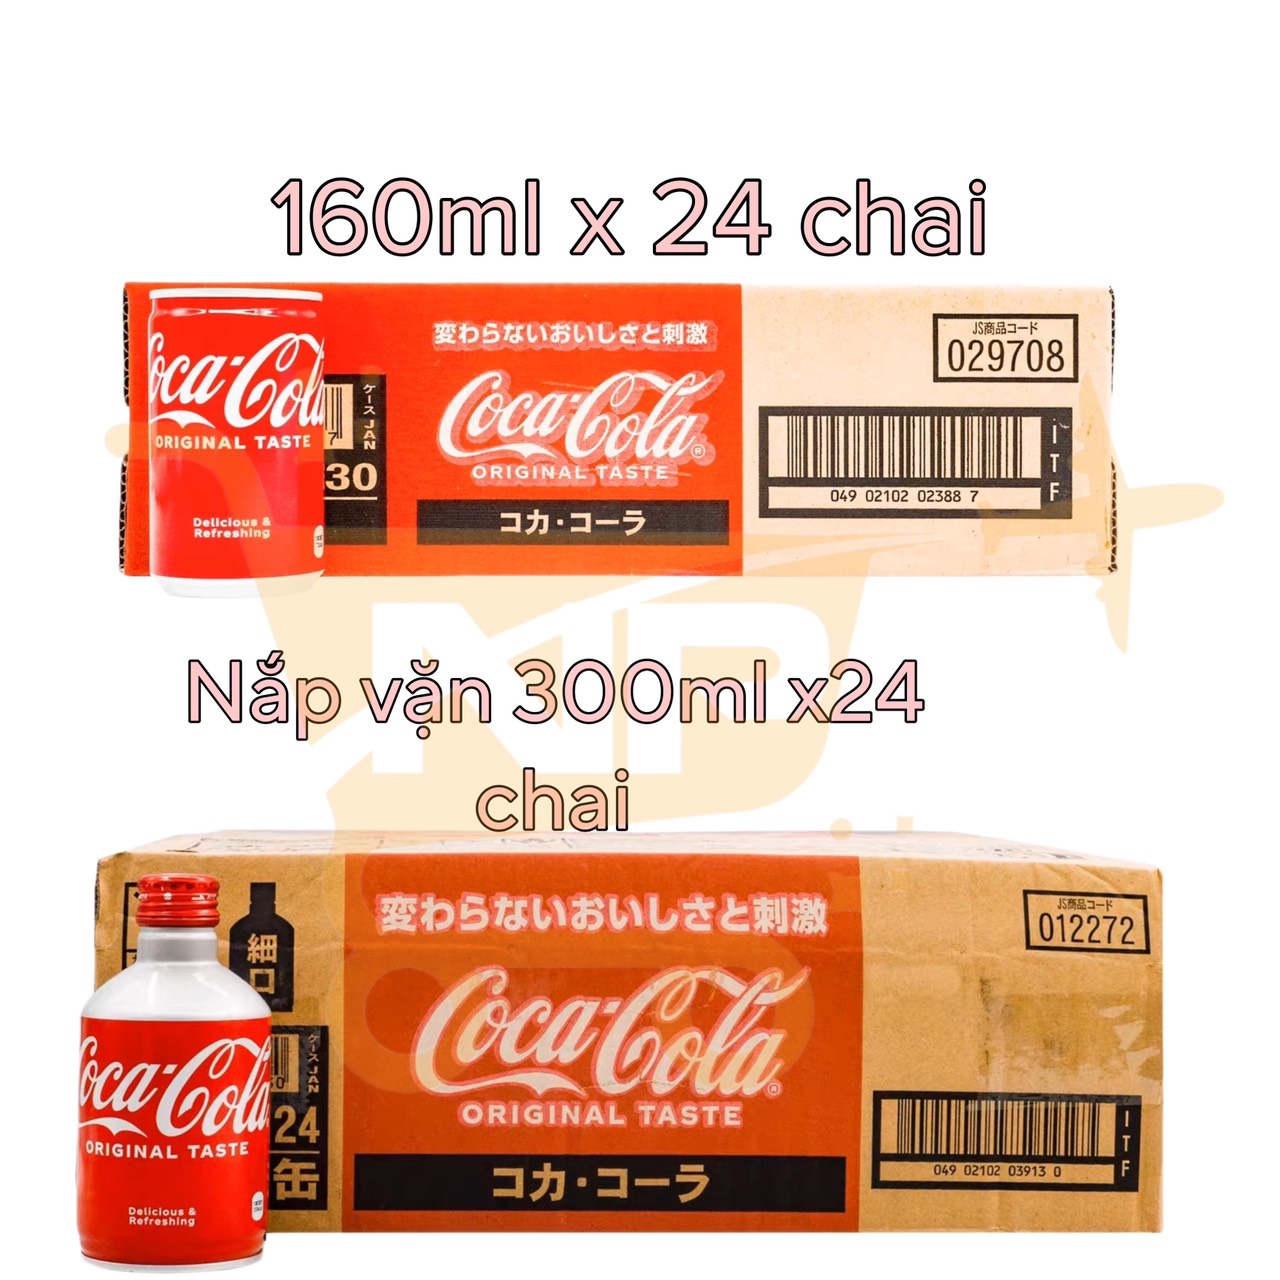 2 24 - Coca nhí & nắp vặn nội địa Nhật